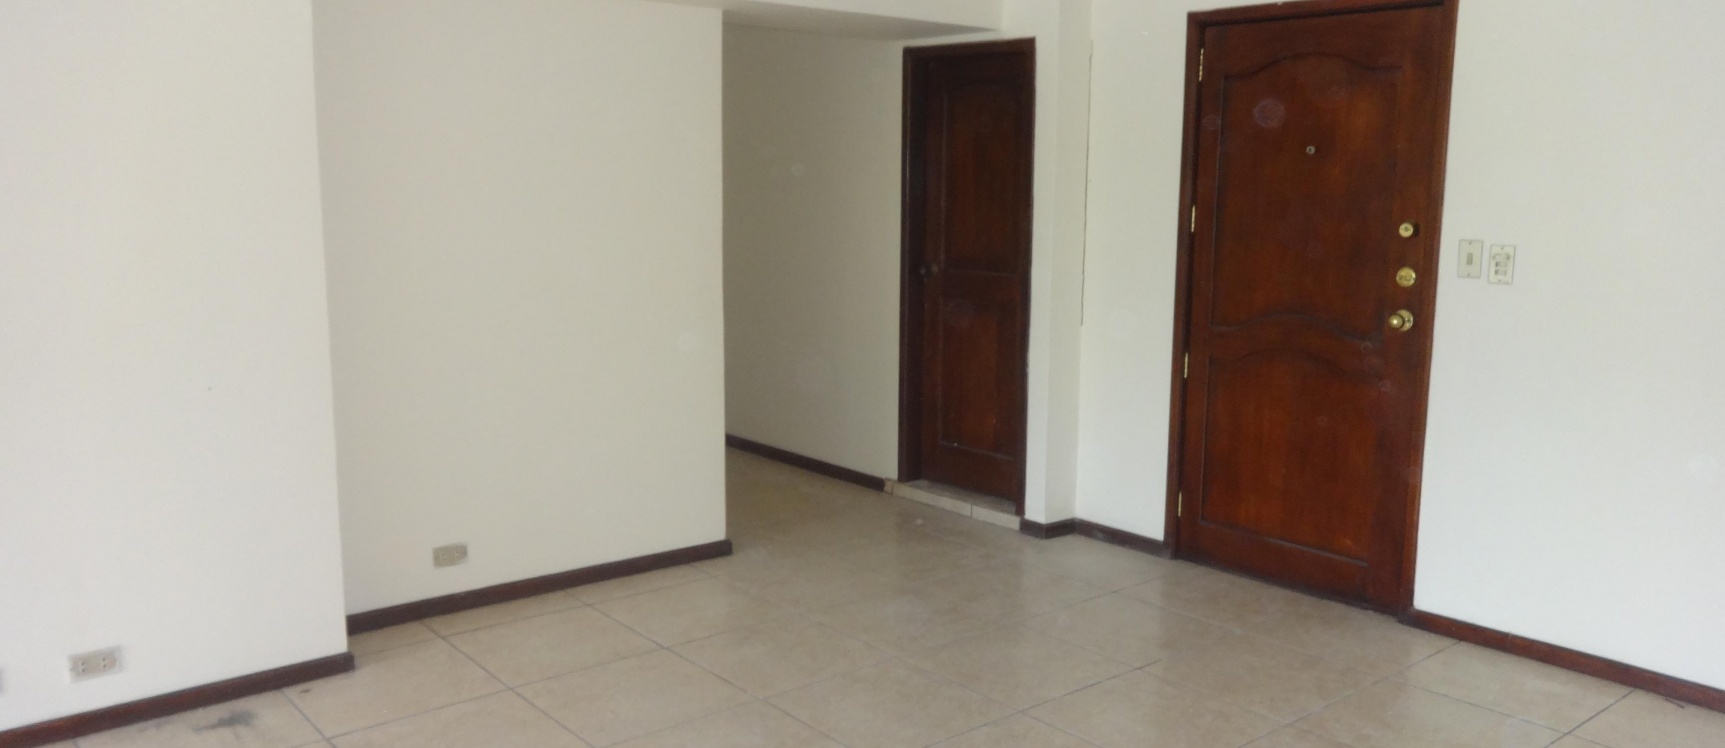 GeoBienes - Departamento de venta en Urdesa Norte, Guayaquil - Plusvalia Guayaquil Casas de venta y alquiler Inmobiliaria Ecuador